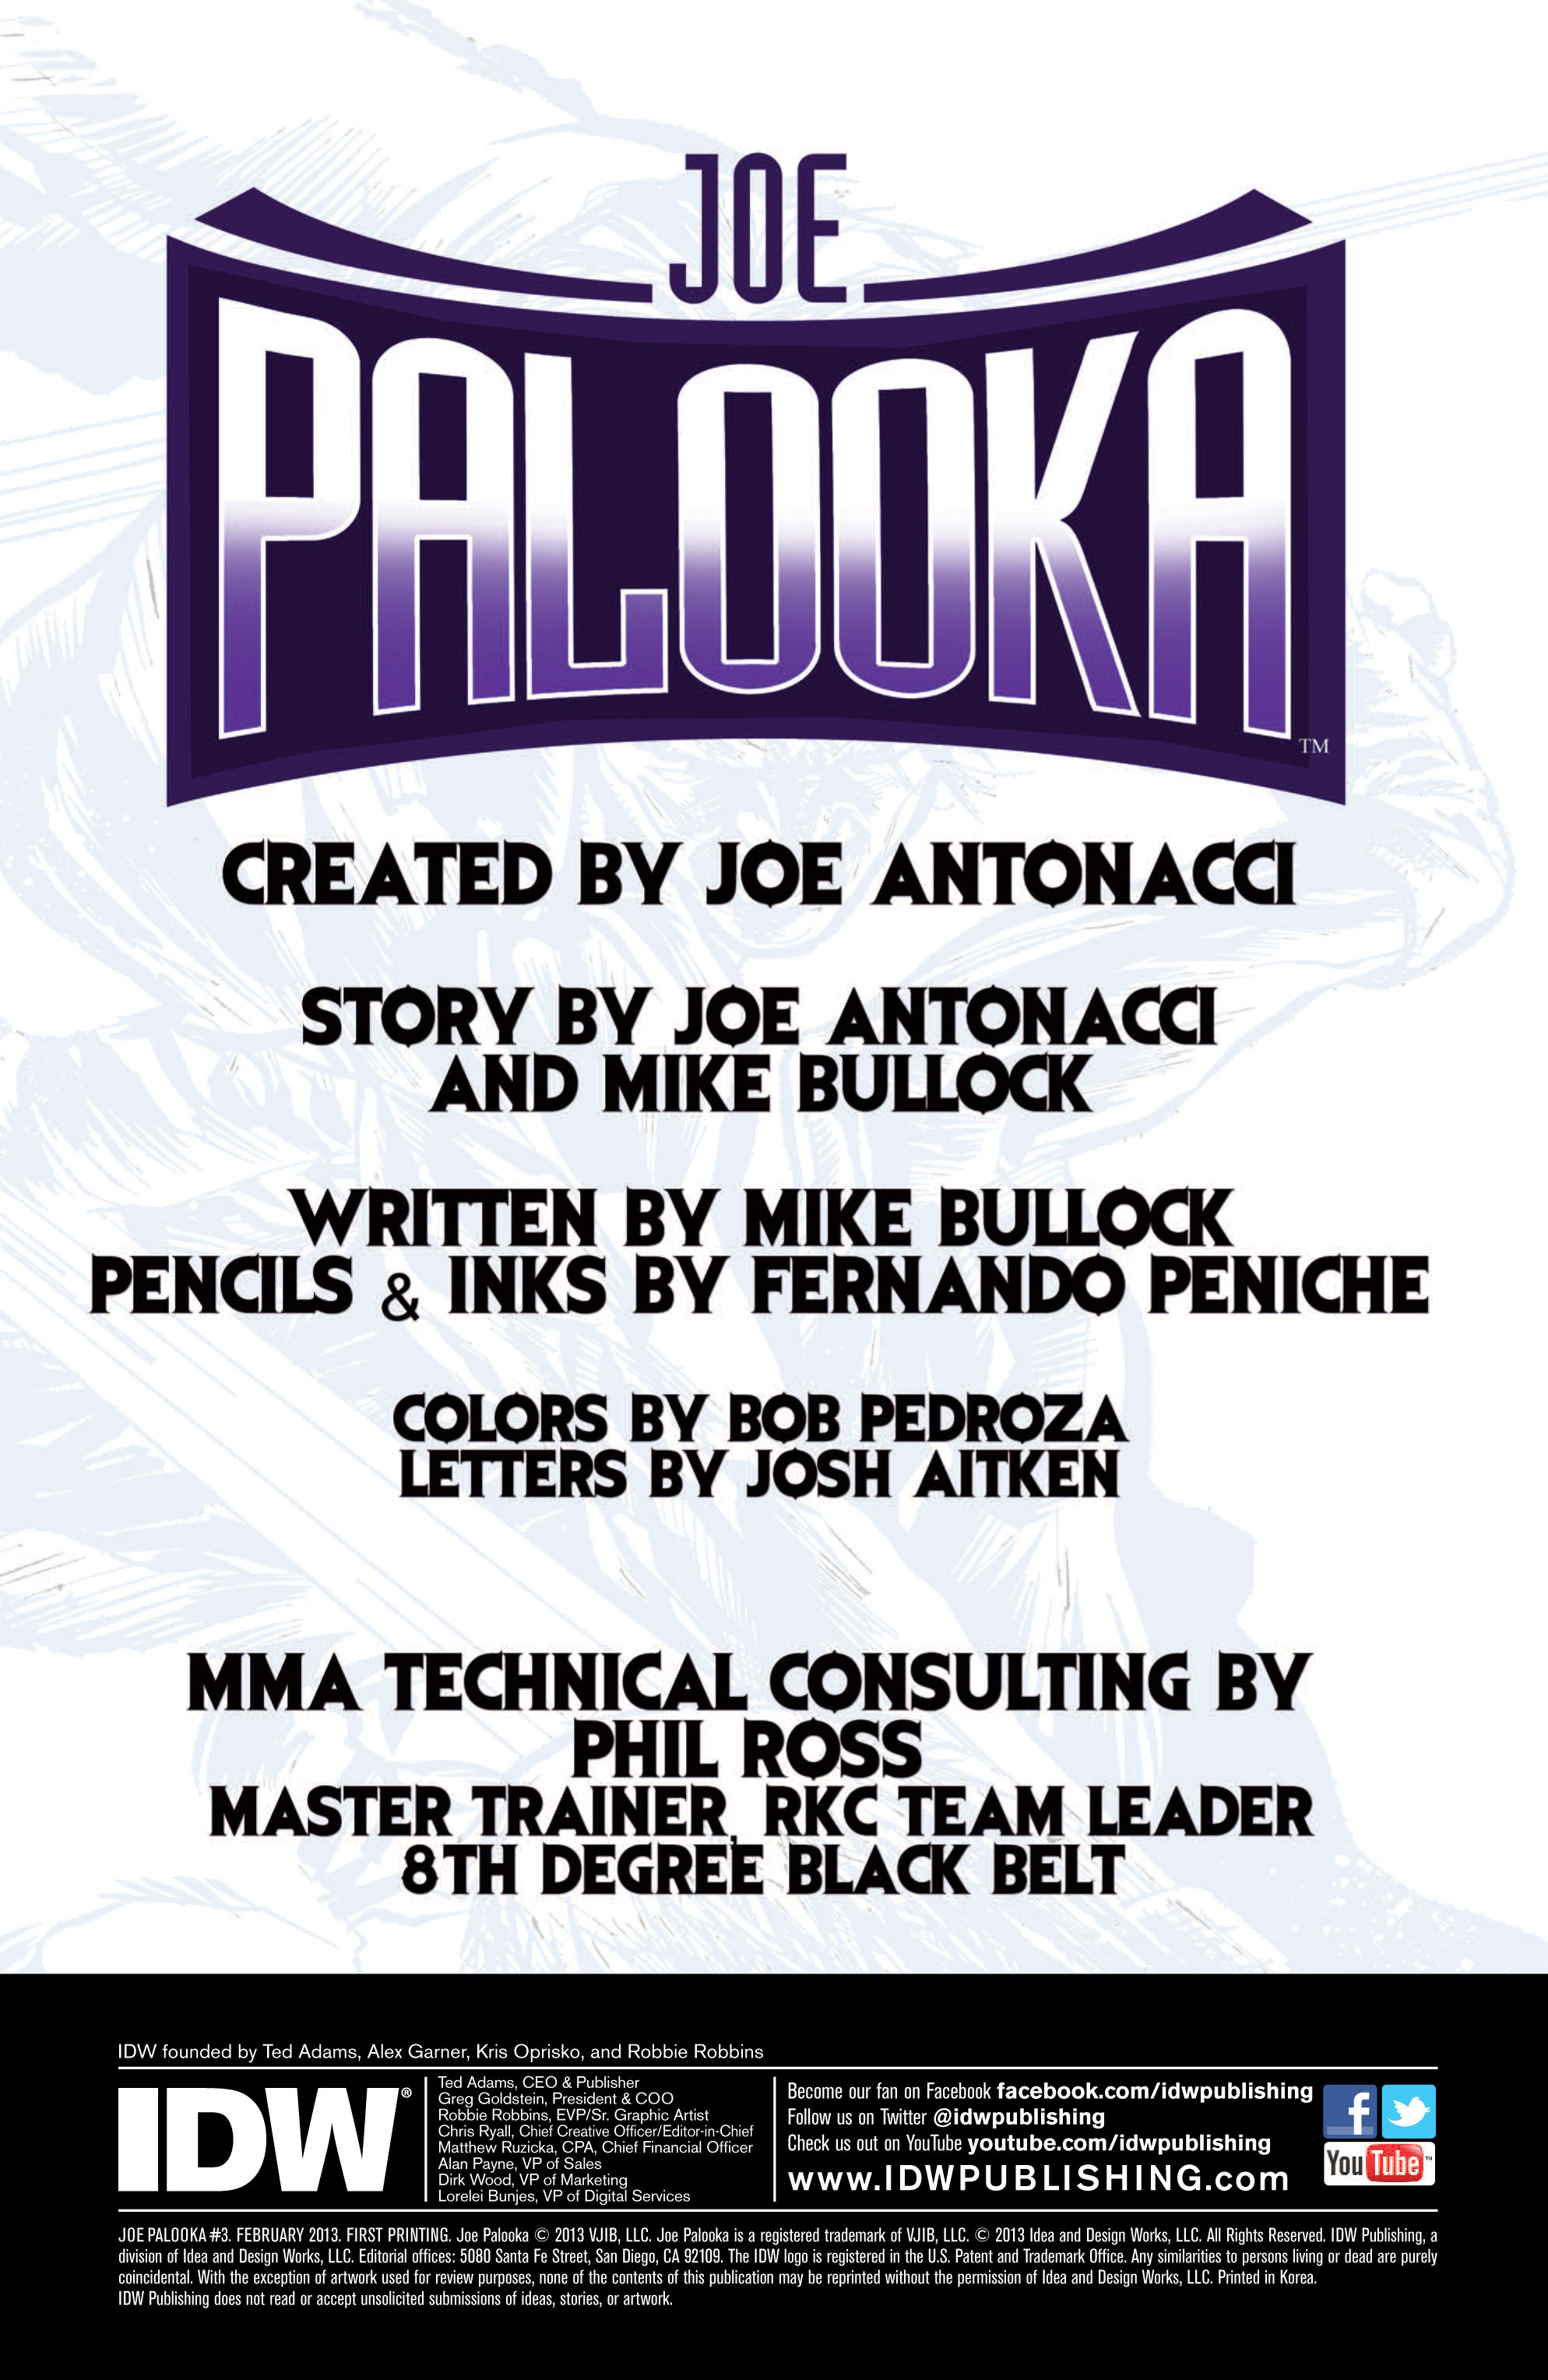 Read online Joe Palooka comic -  Issue #3 - 2